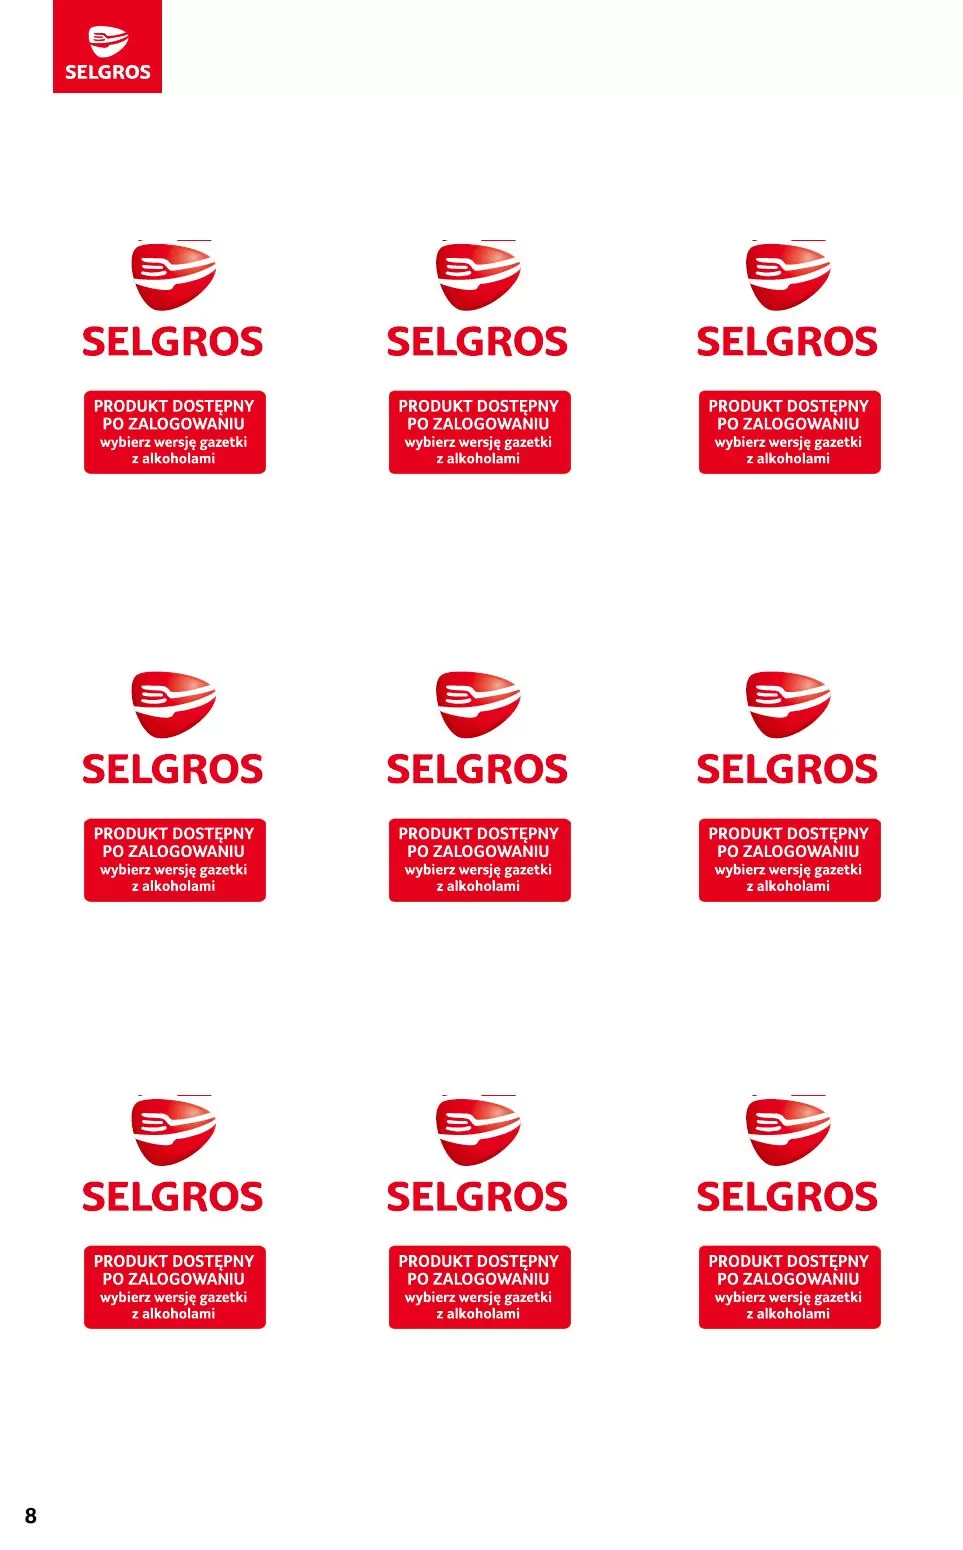 Gazetka promocyjna sklepu Selgros - Make a dealz - data obowiązywania: od 16.11 do 29.11